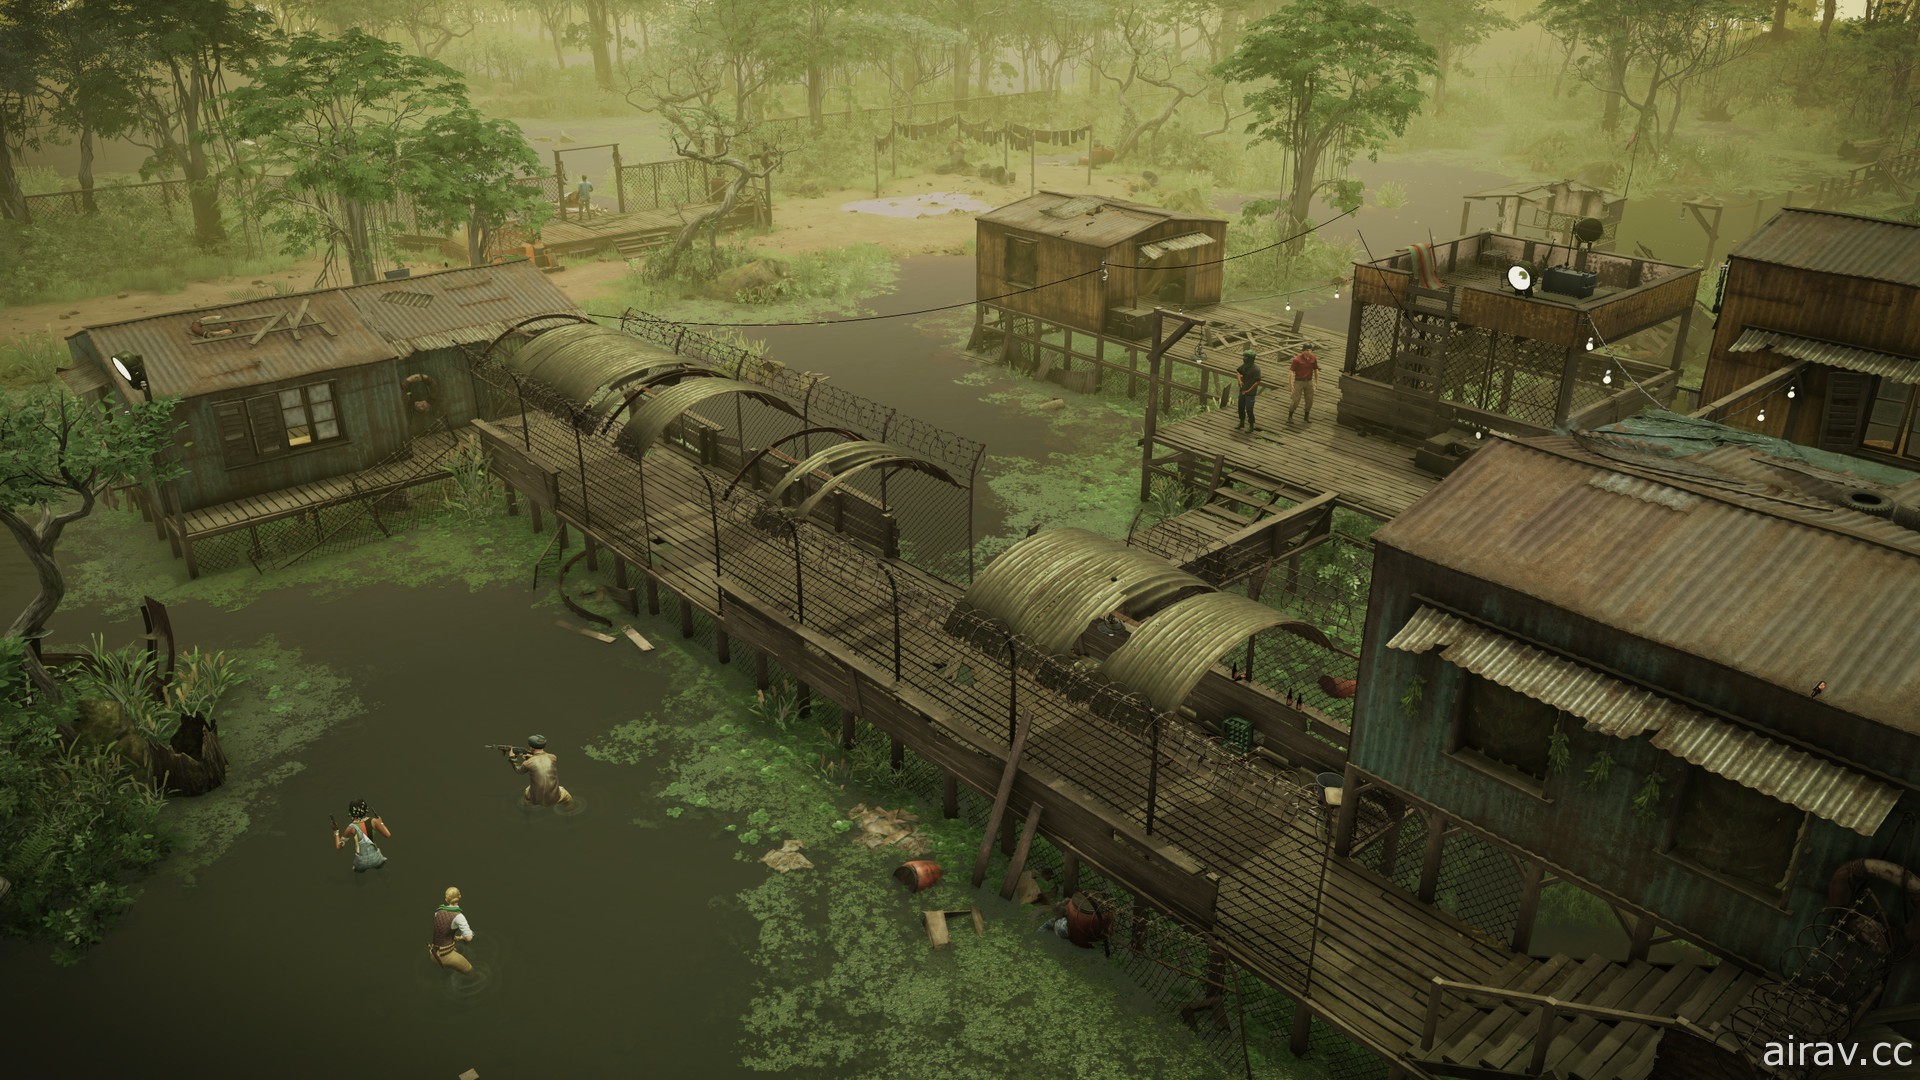 經典策略遊戲《鐵血聯盟》系列公開最新作《鐵血聯盟 3》 由《天堂島》團隊開發